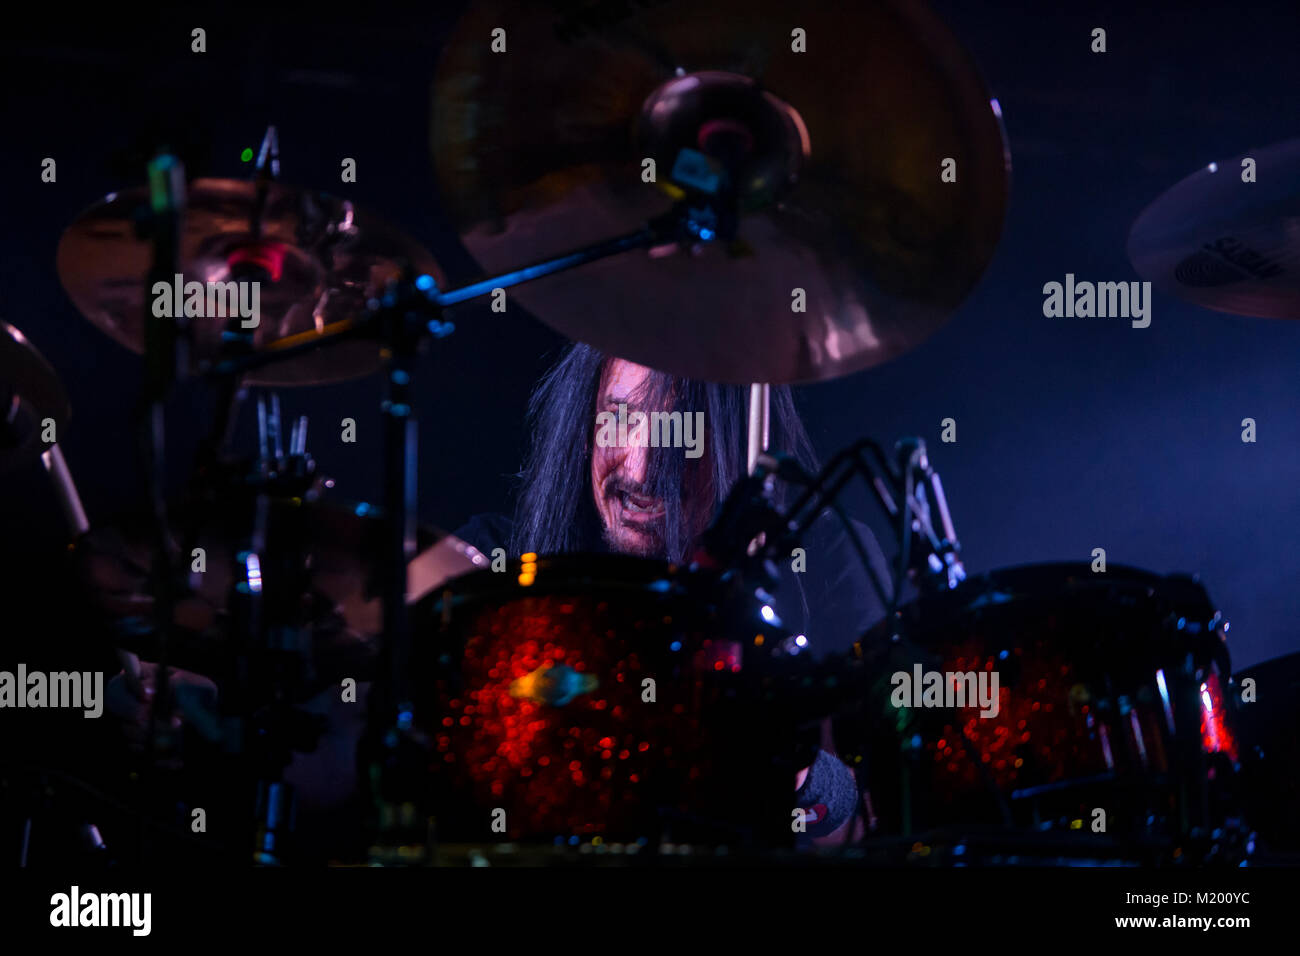 Le Glam metal américain W.A.S.P. bande effectue un concert live à Ricks à Bergen. Membre de la bande vivent ici Randy noir sur batterie est vu sur scène. La Norvège, 15/10 2015. Banque D'Images